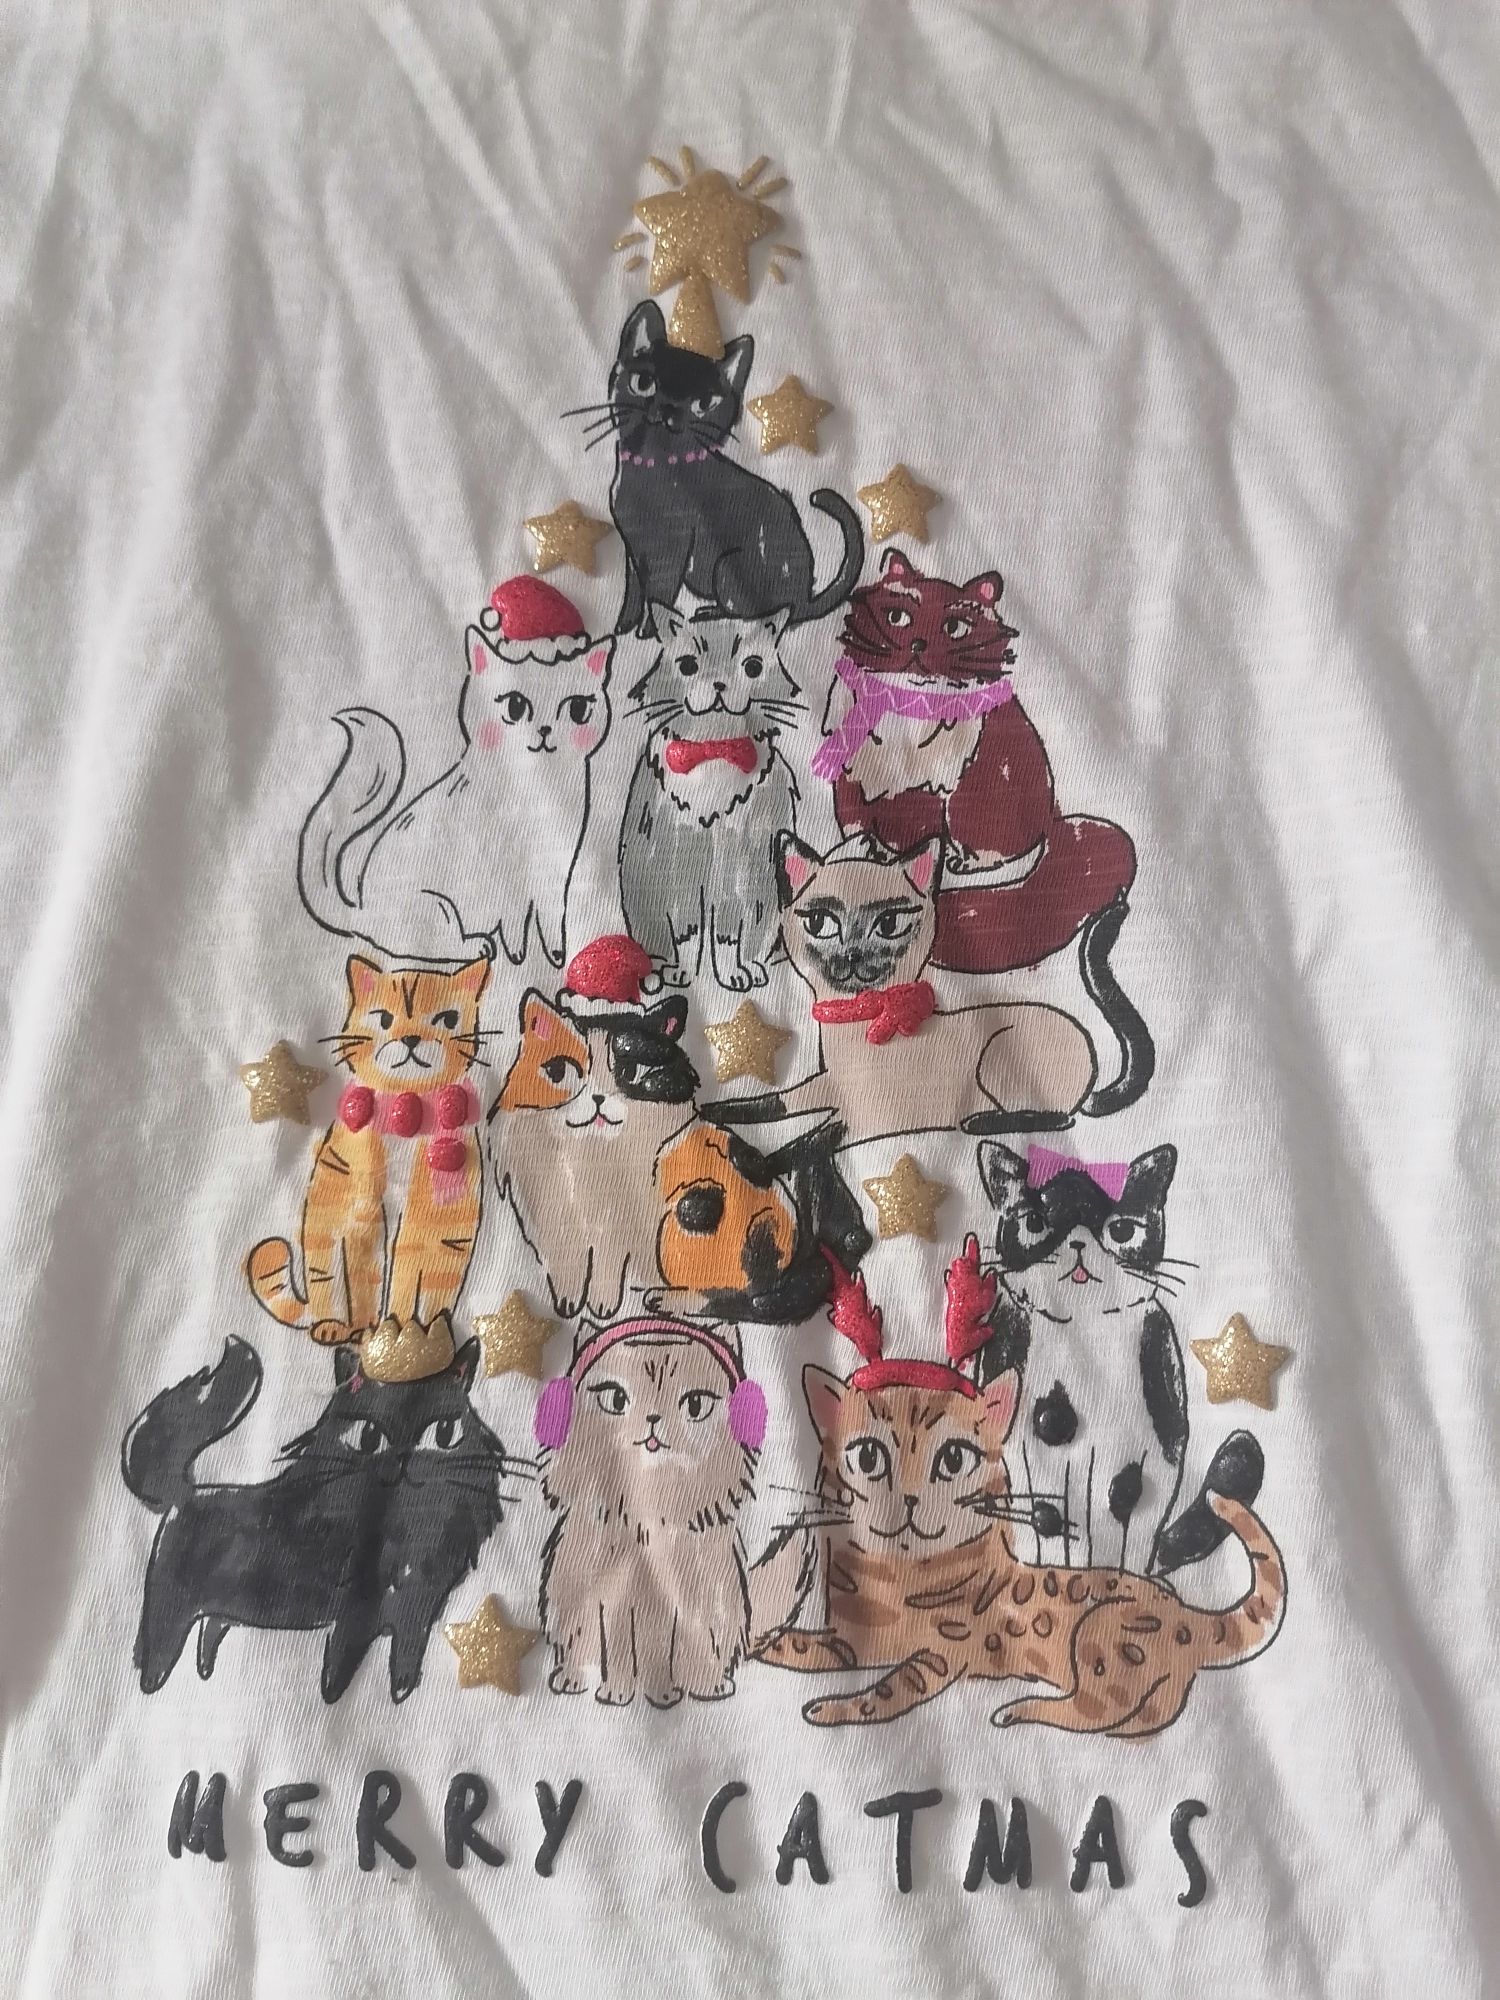 Bluza alba cu pisici, Merry Cat mas, M&S, 8-9 ani